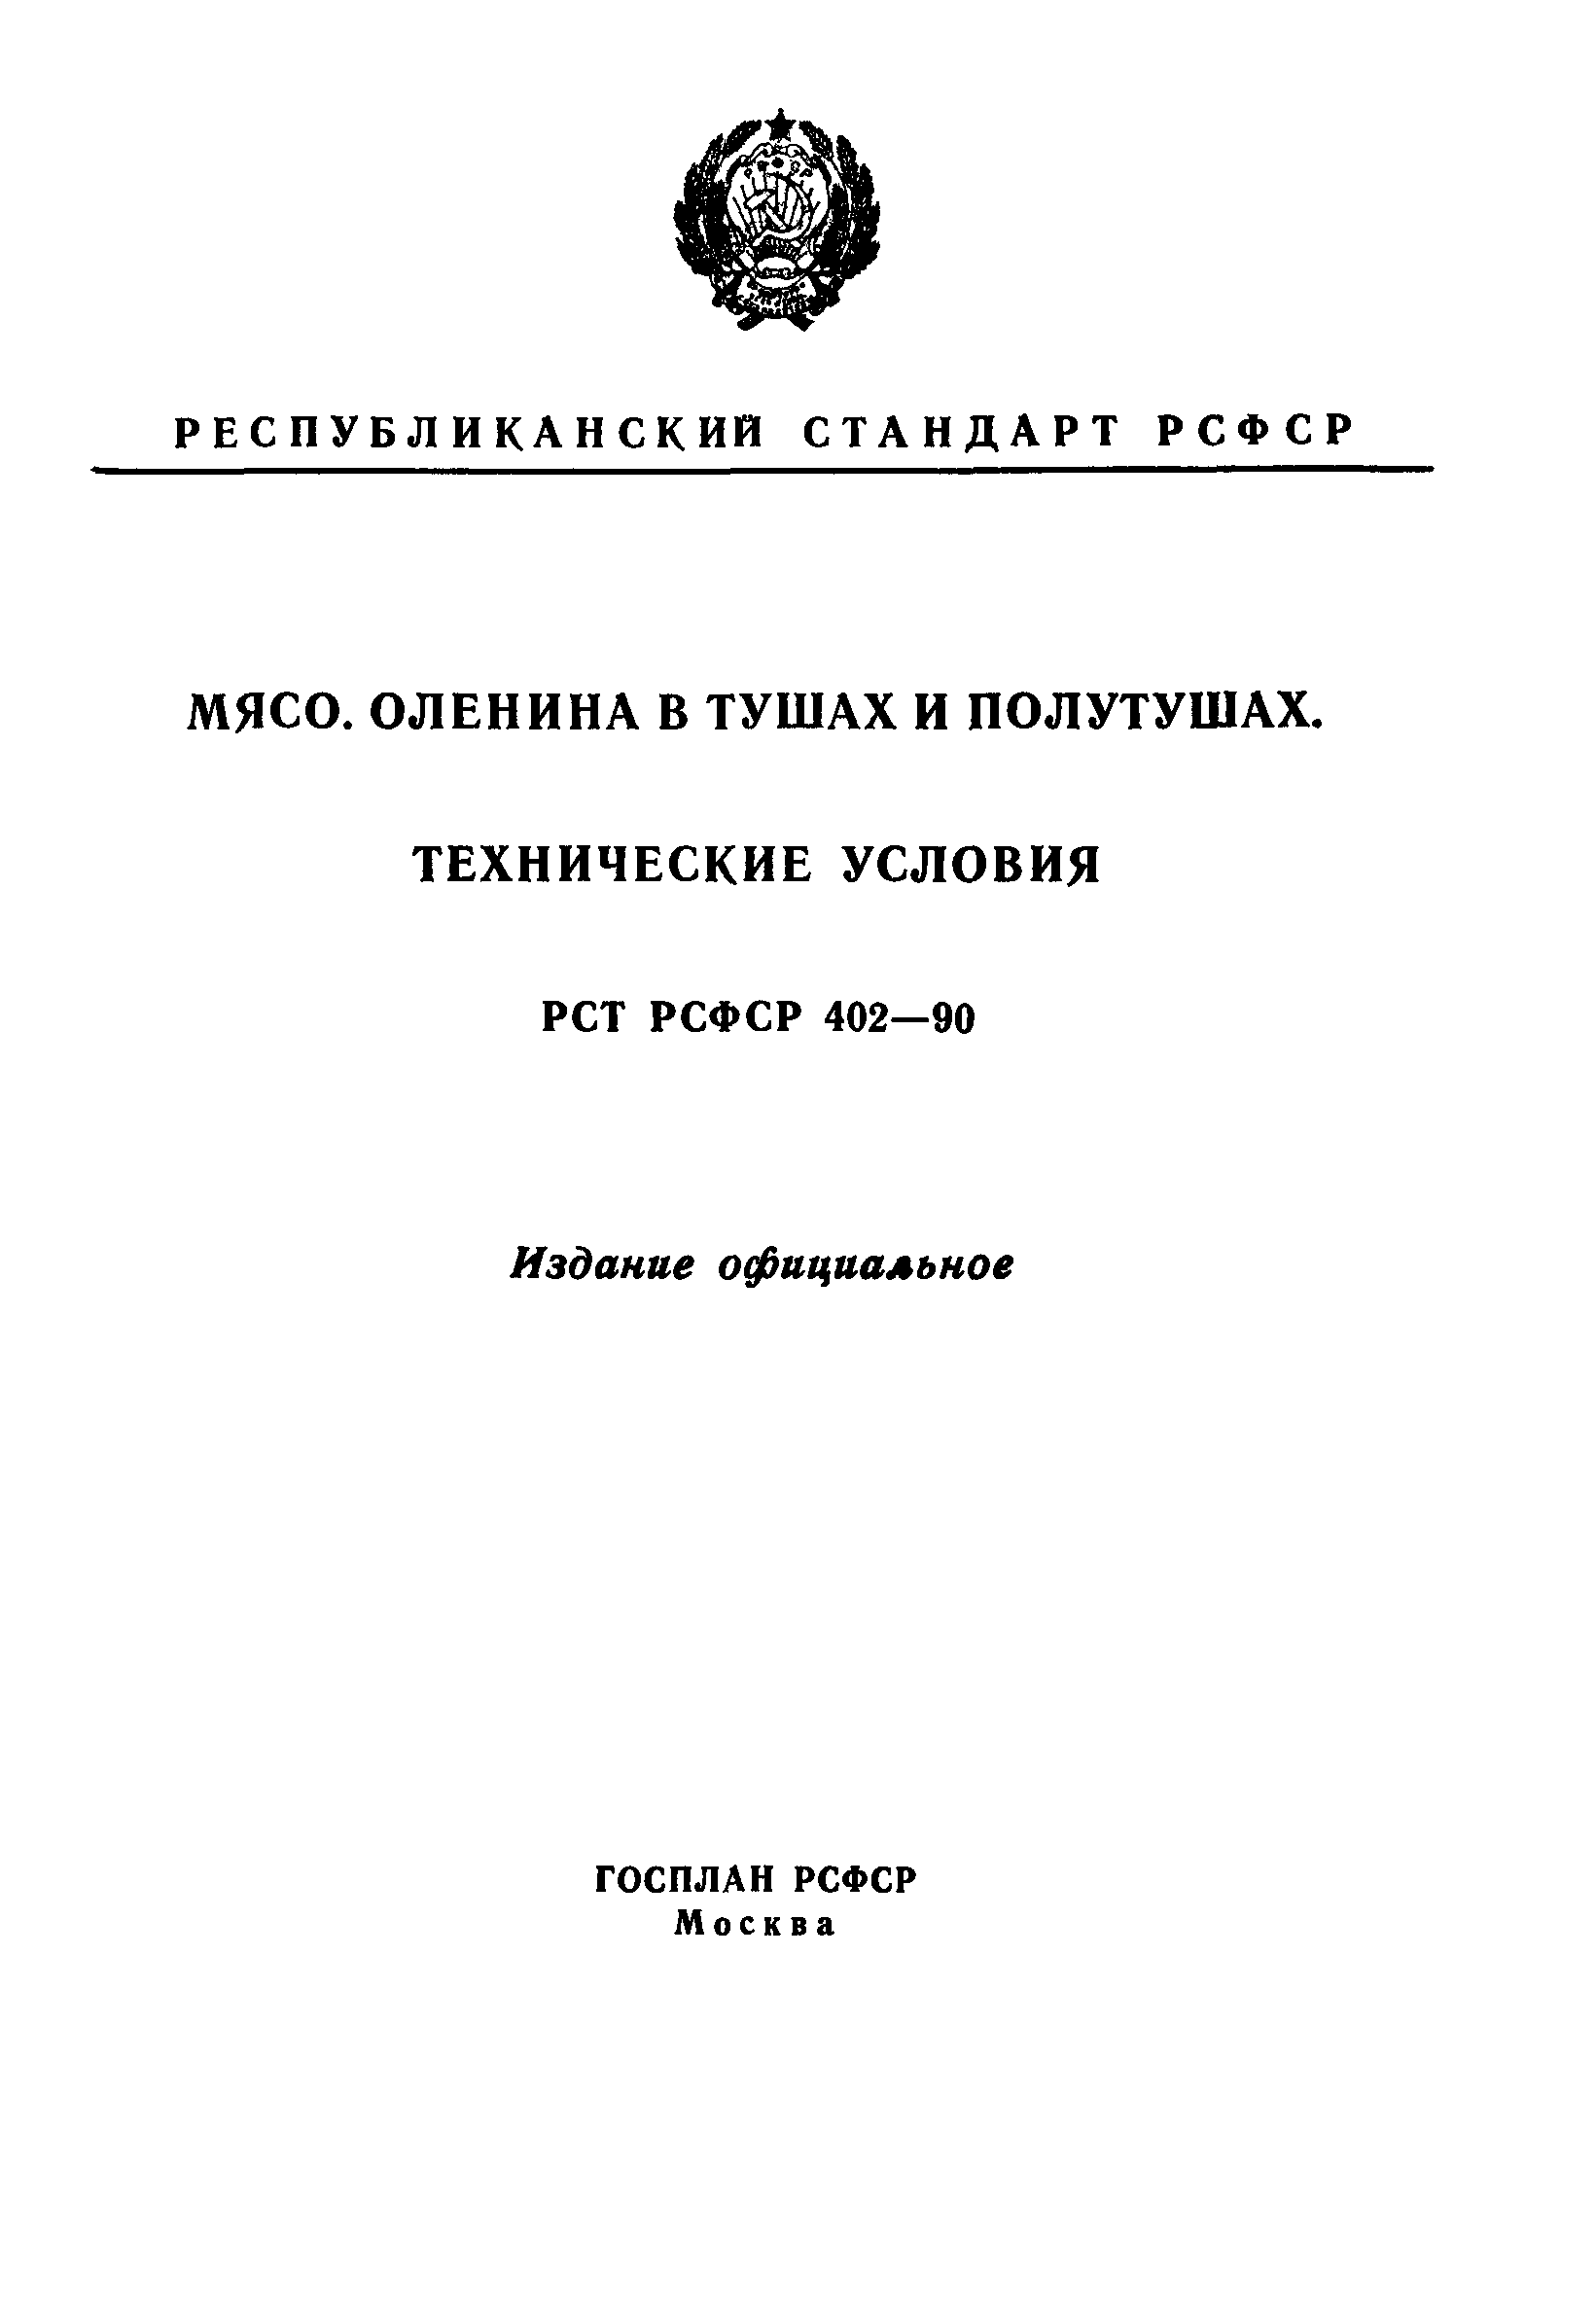 РСТ РСФСР 402-90